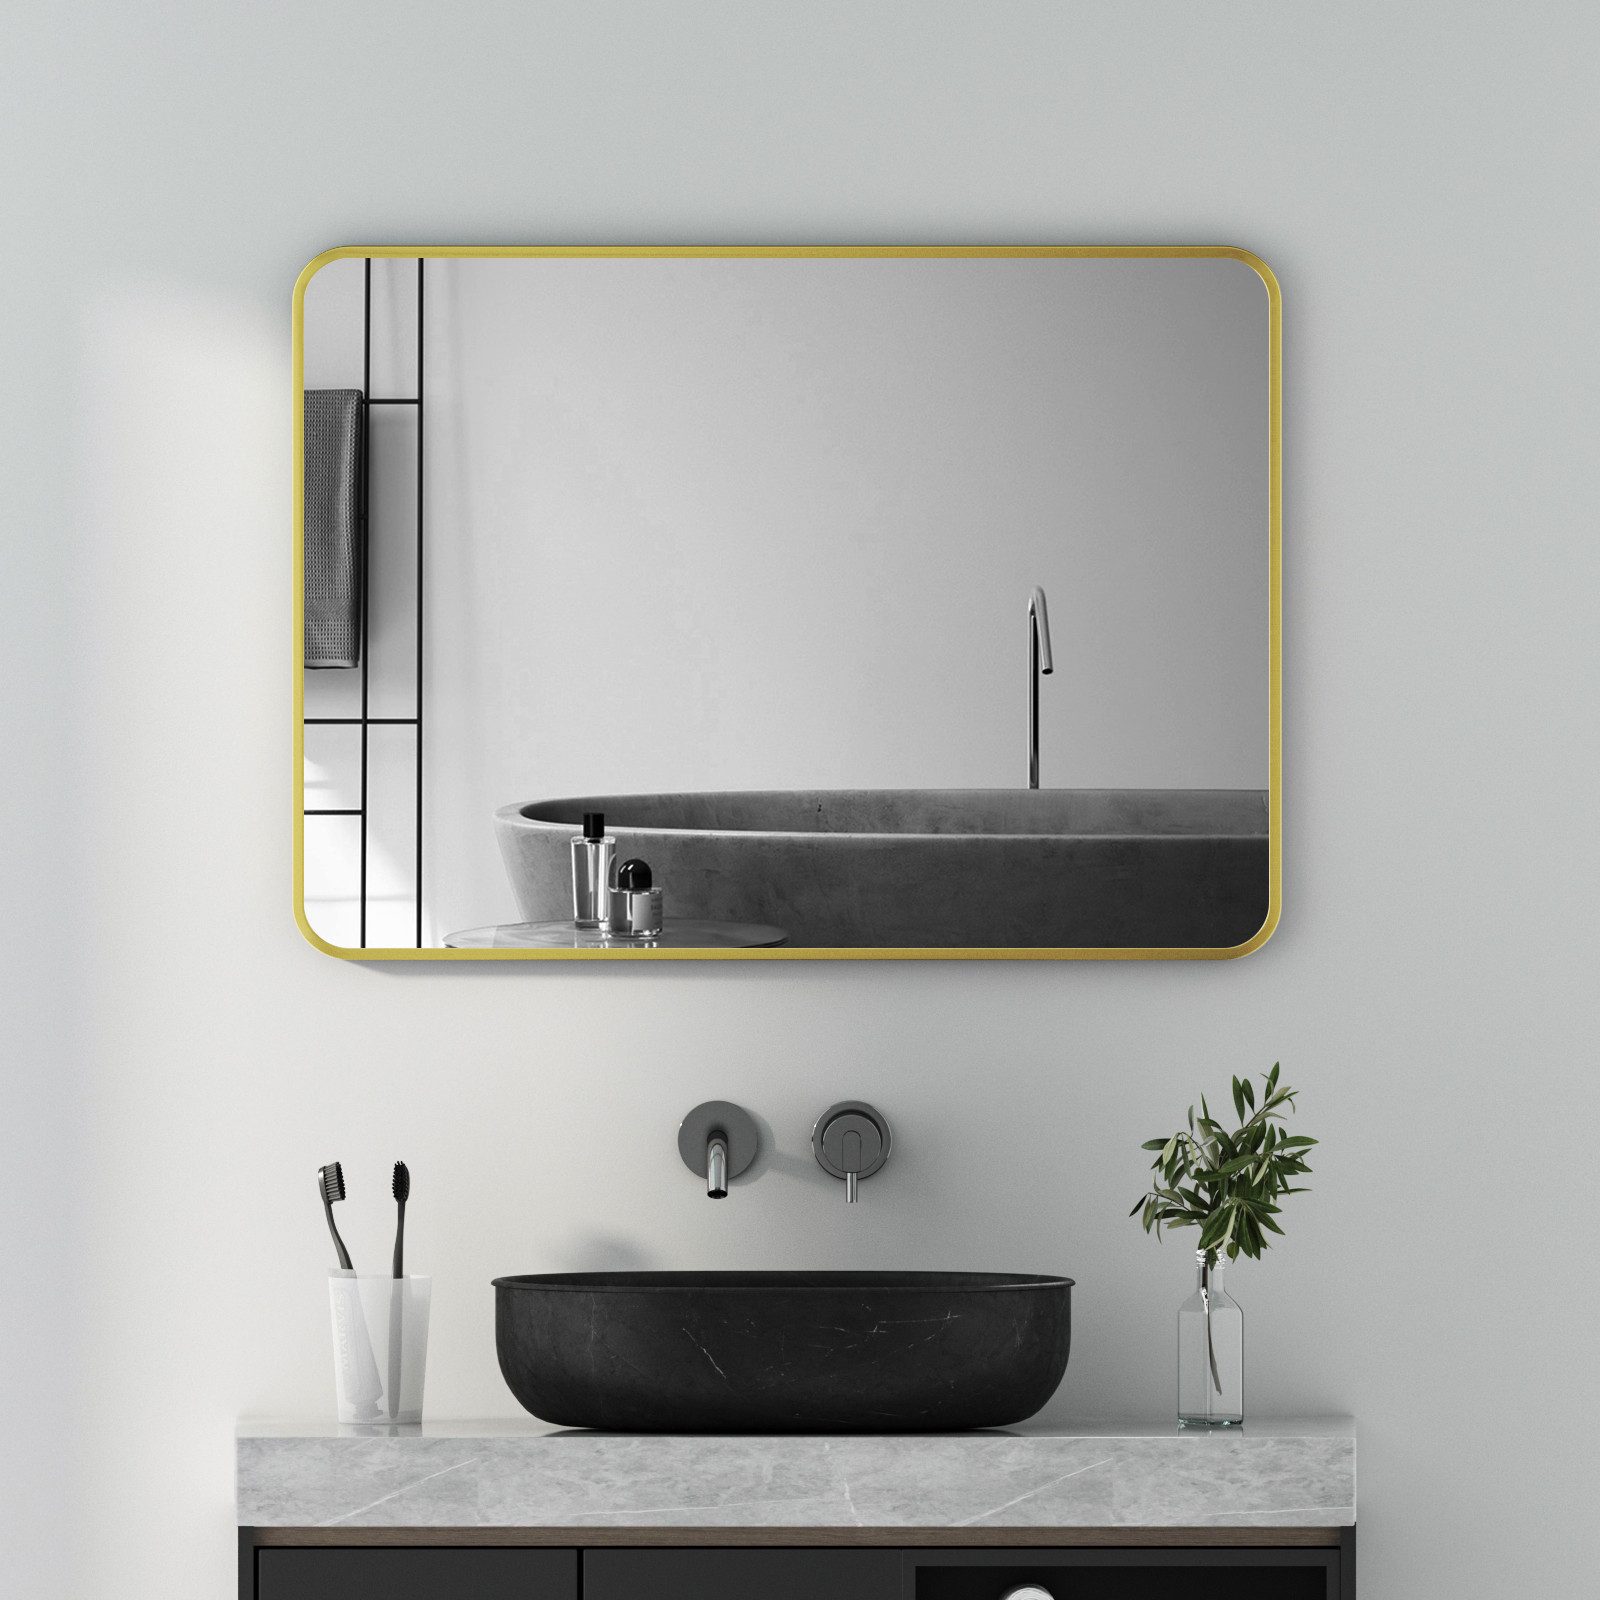 Boromal Spiegel Wandspiegel Rechteckig 50x70 60x80 Schwarz / Gold Metallrahmen Rattan (Badezimmerspiegel Dekospiegel Badspiegel, Rechteckig), Vertikal und Horizontal möglich, mit explosionsgeschützte membran